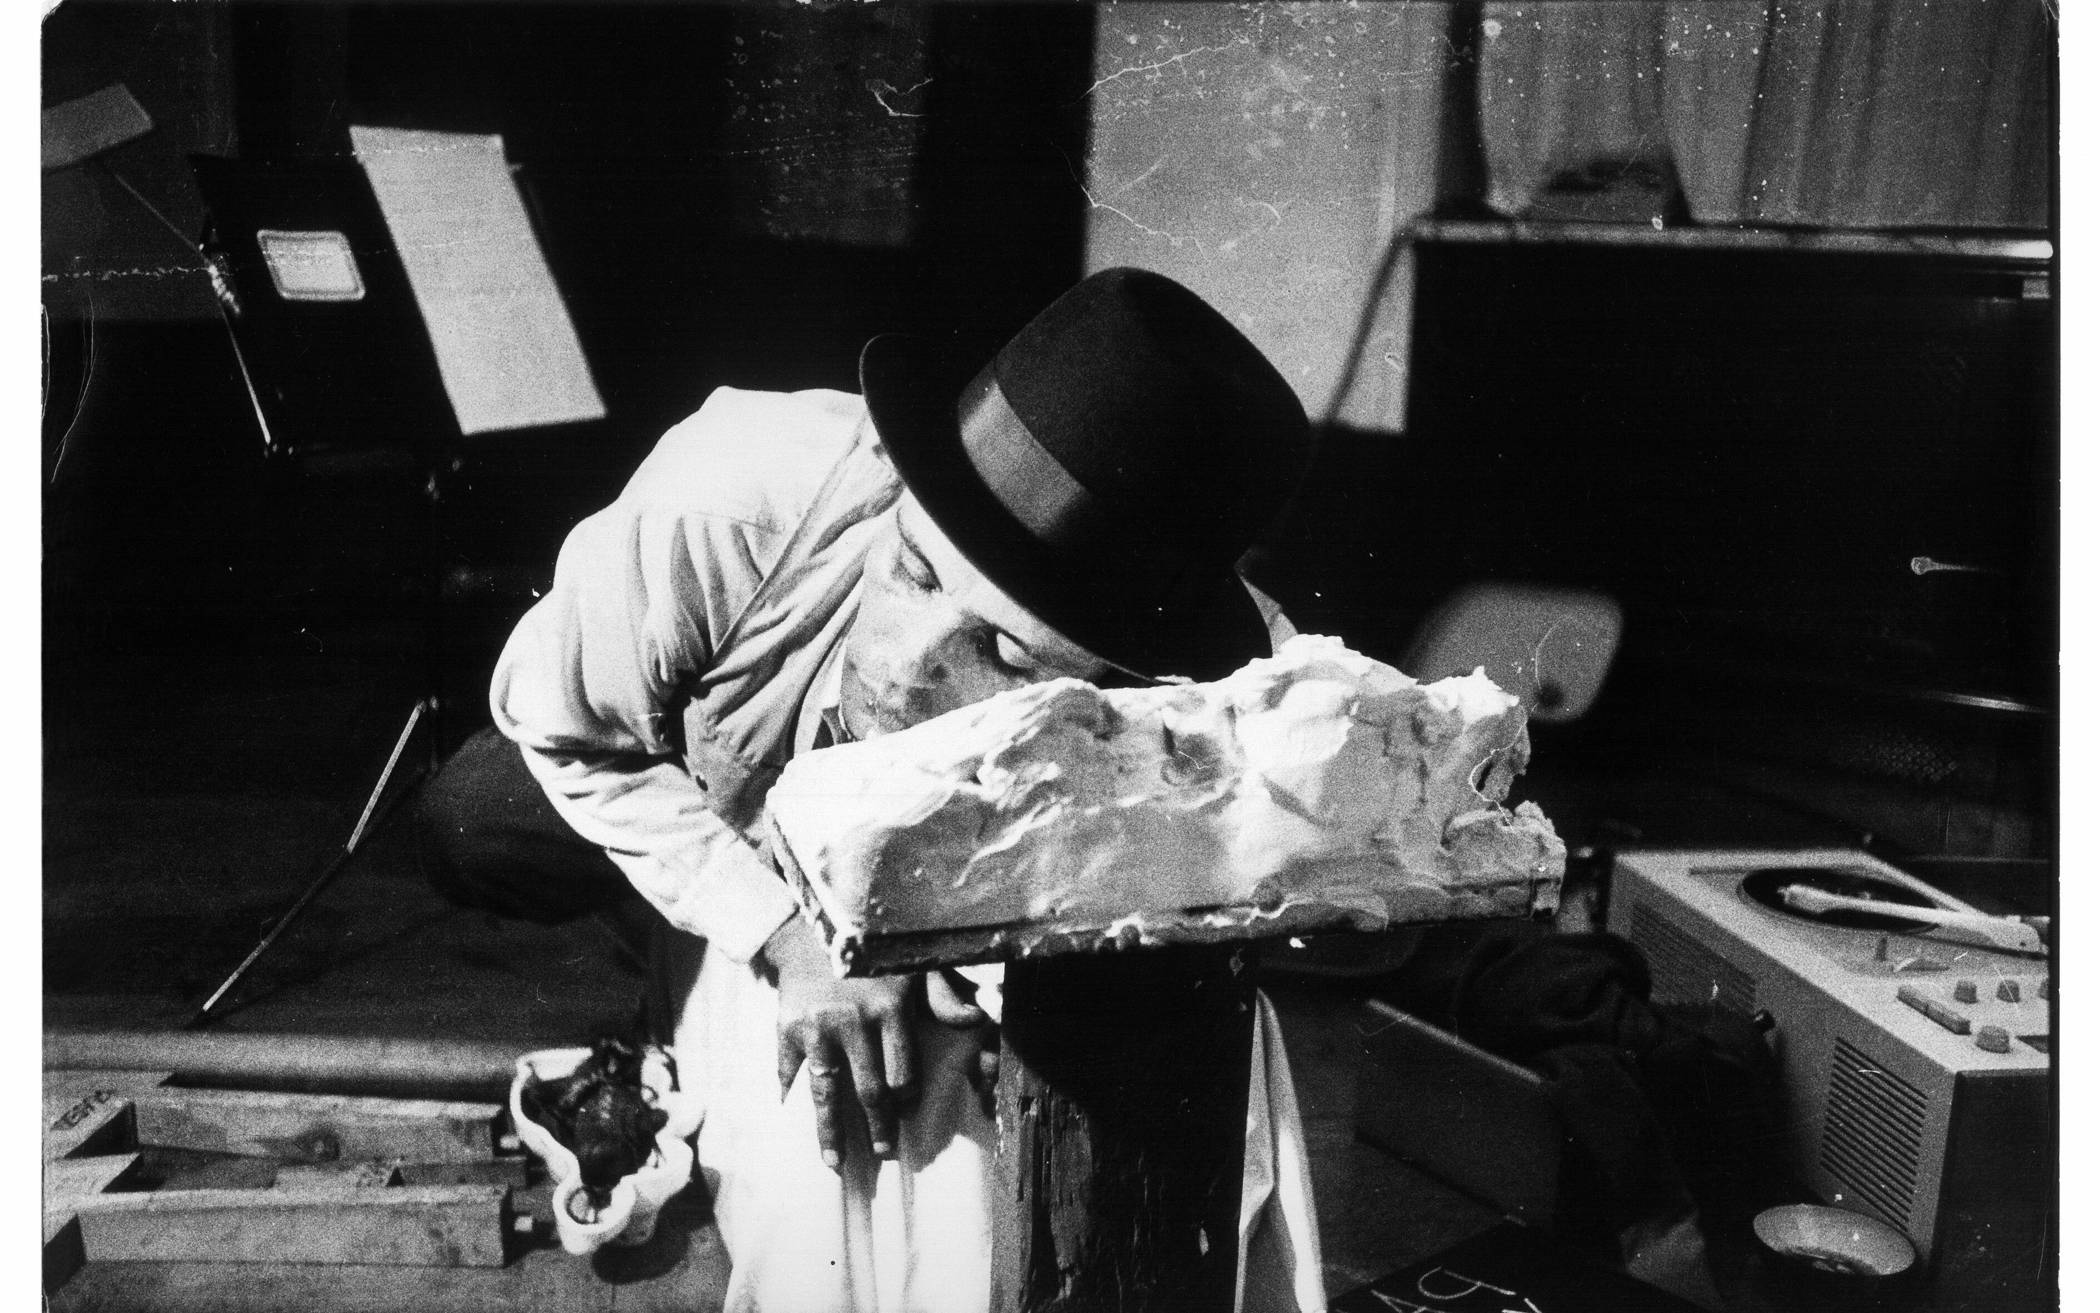  Joseph Beuys am 5. Juni 1965 um 0:24 Uhr beim 24-Stunden-Happening in der Galerie Parnass an der Moltkestraße im Briller Viertel – fotografiert von Ute Klophaus. 